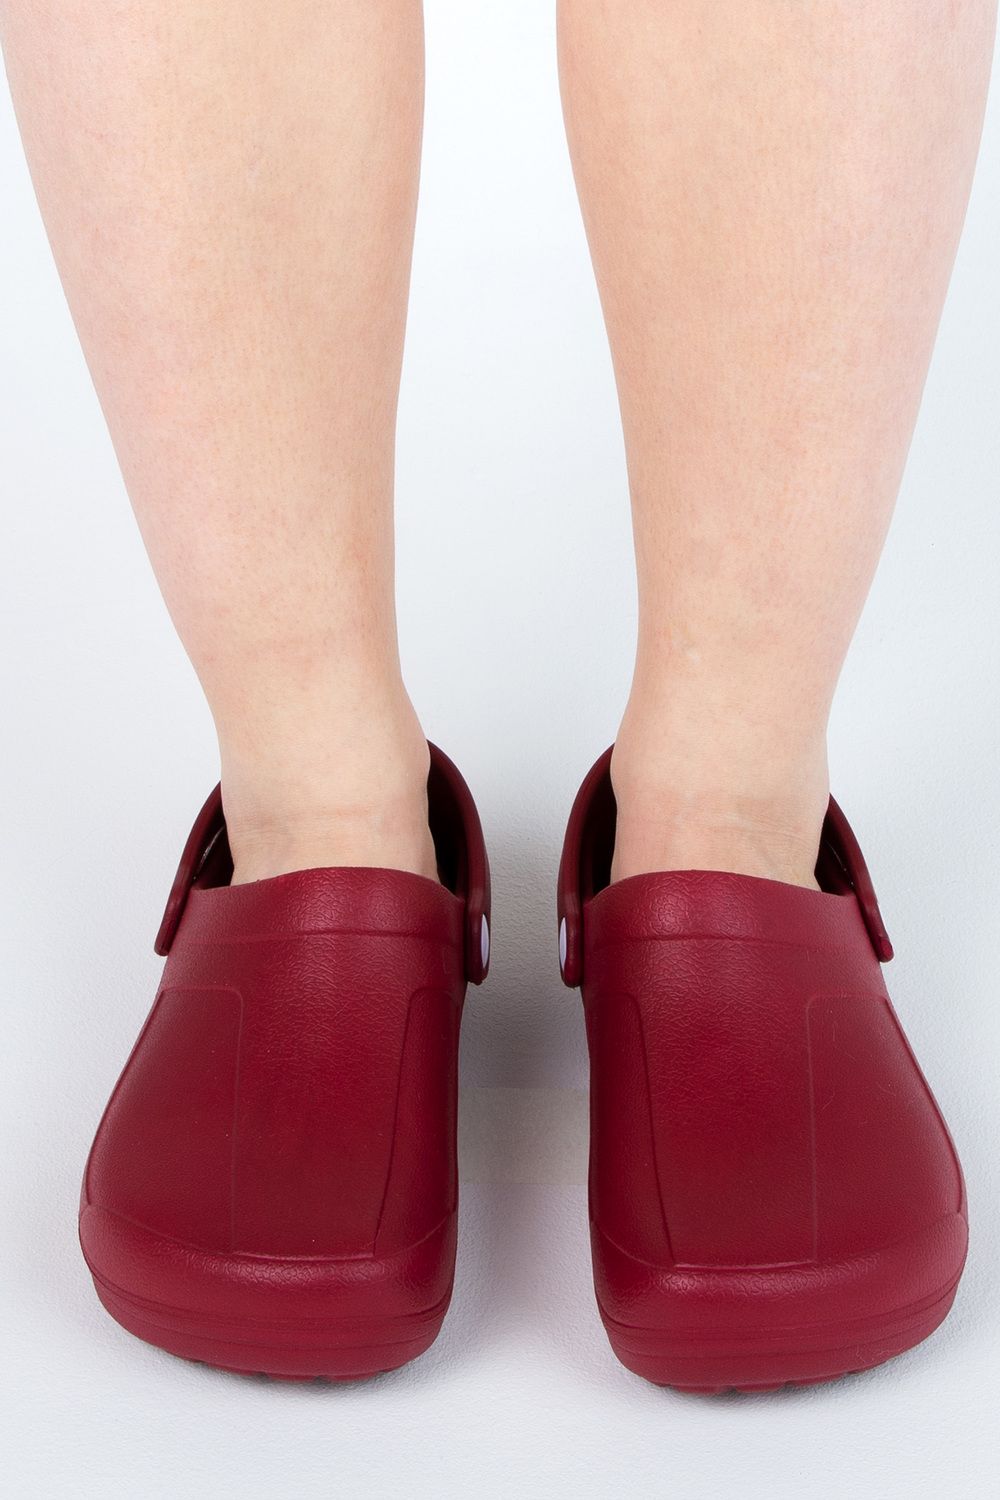 Обувь повседневная женская сабо FGR - красный